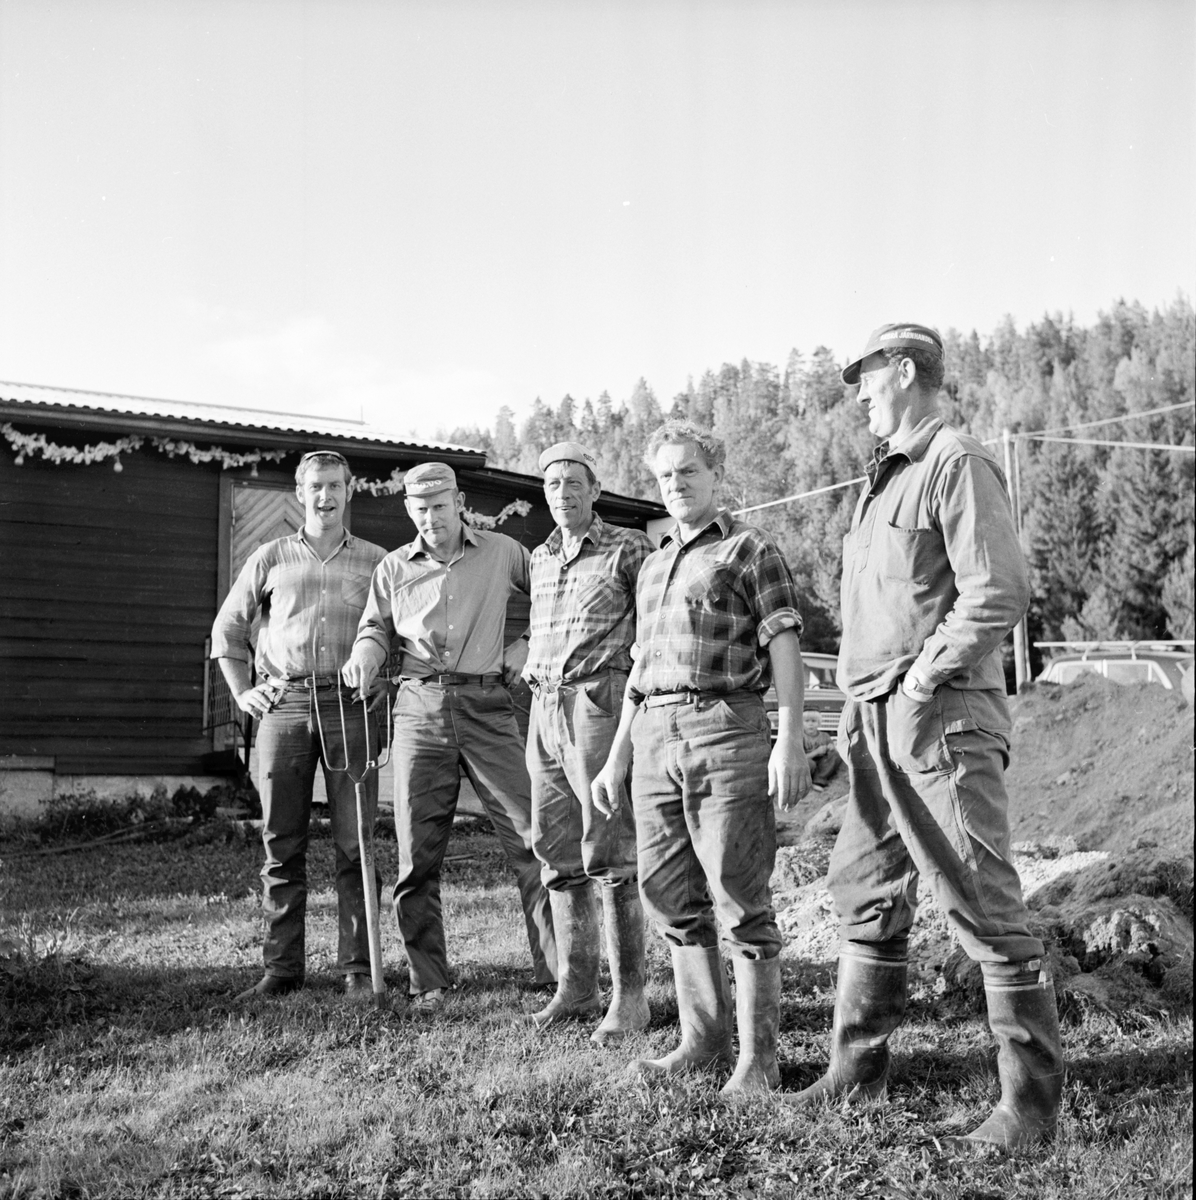 Iste. Vattenfrågan löses.
September 1972
Fv. Bengt-Göran Orgård Tomterna, Sölve Jonsson Flästa, Pelle Norfelt Iste, Knutte Westerlund Bollnäs, Birger Sandström Iste.